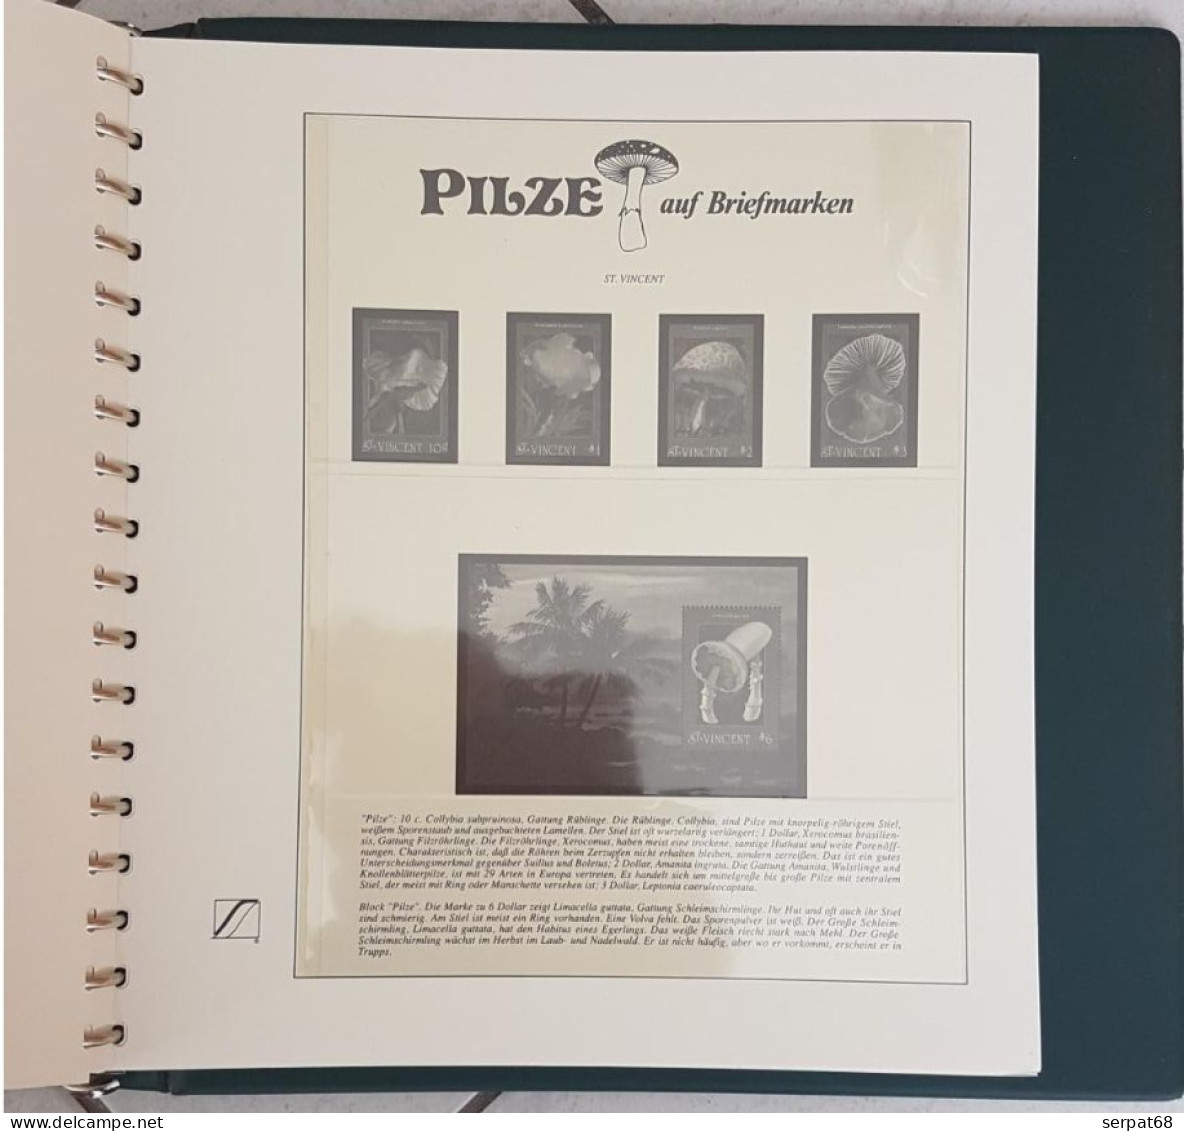 Album pré-imprimé pour timbres Champignons - Pilze auf Briefmarken